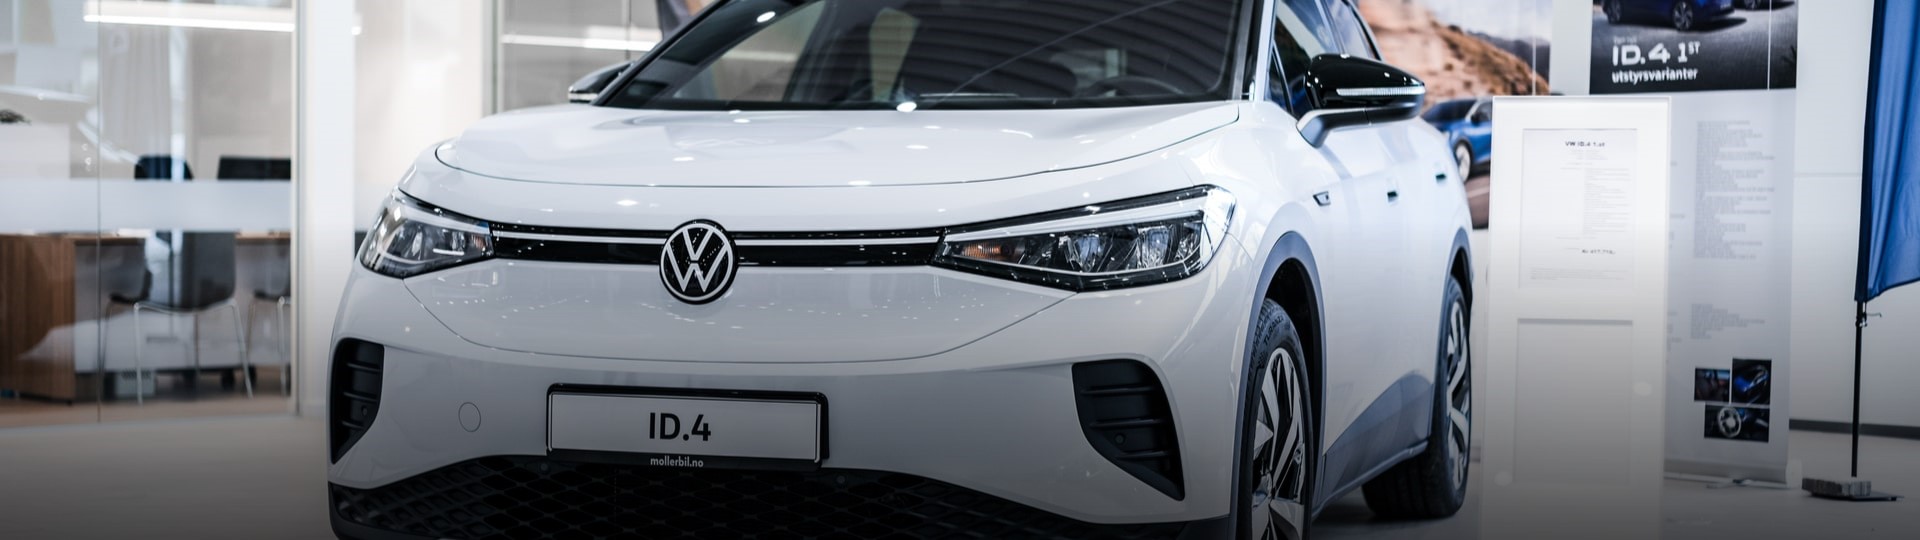 Volkswagen v prvním pololetí ztrojnásobil globální dodávky elektrických aut